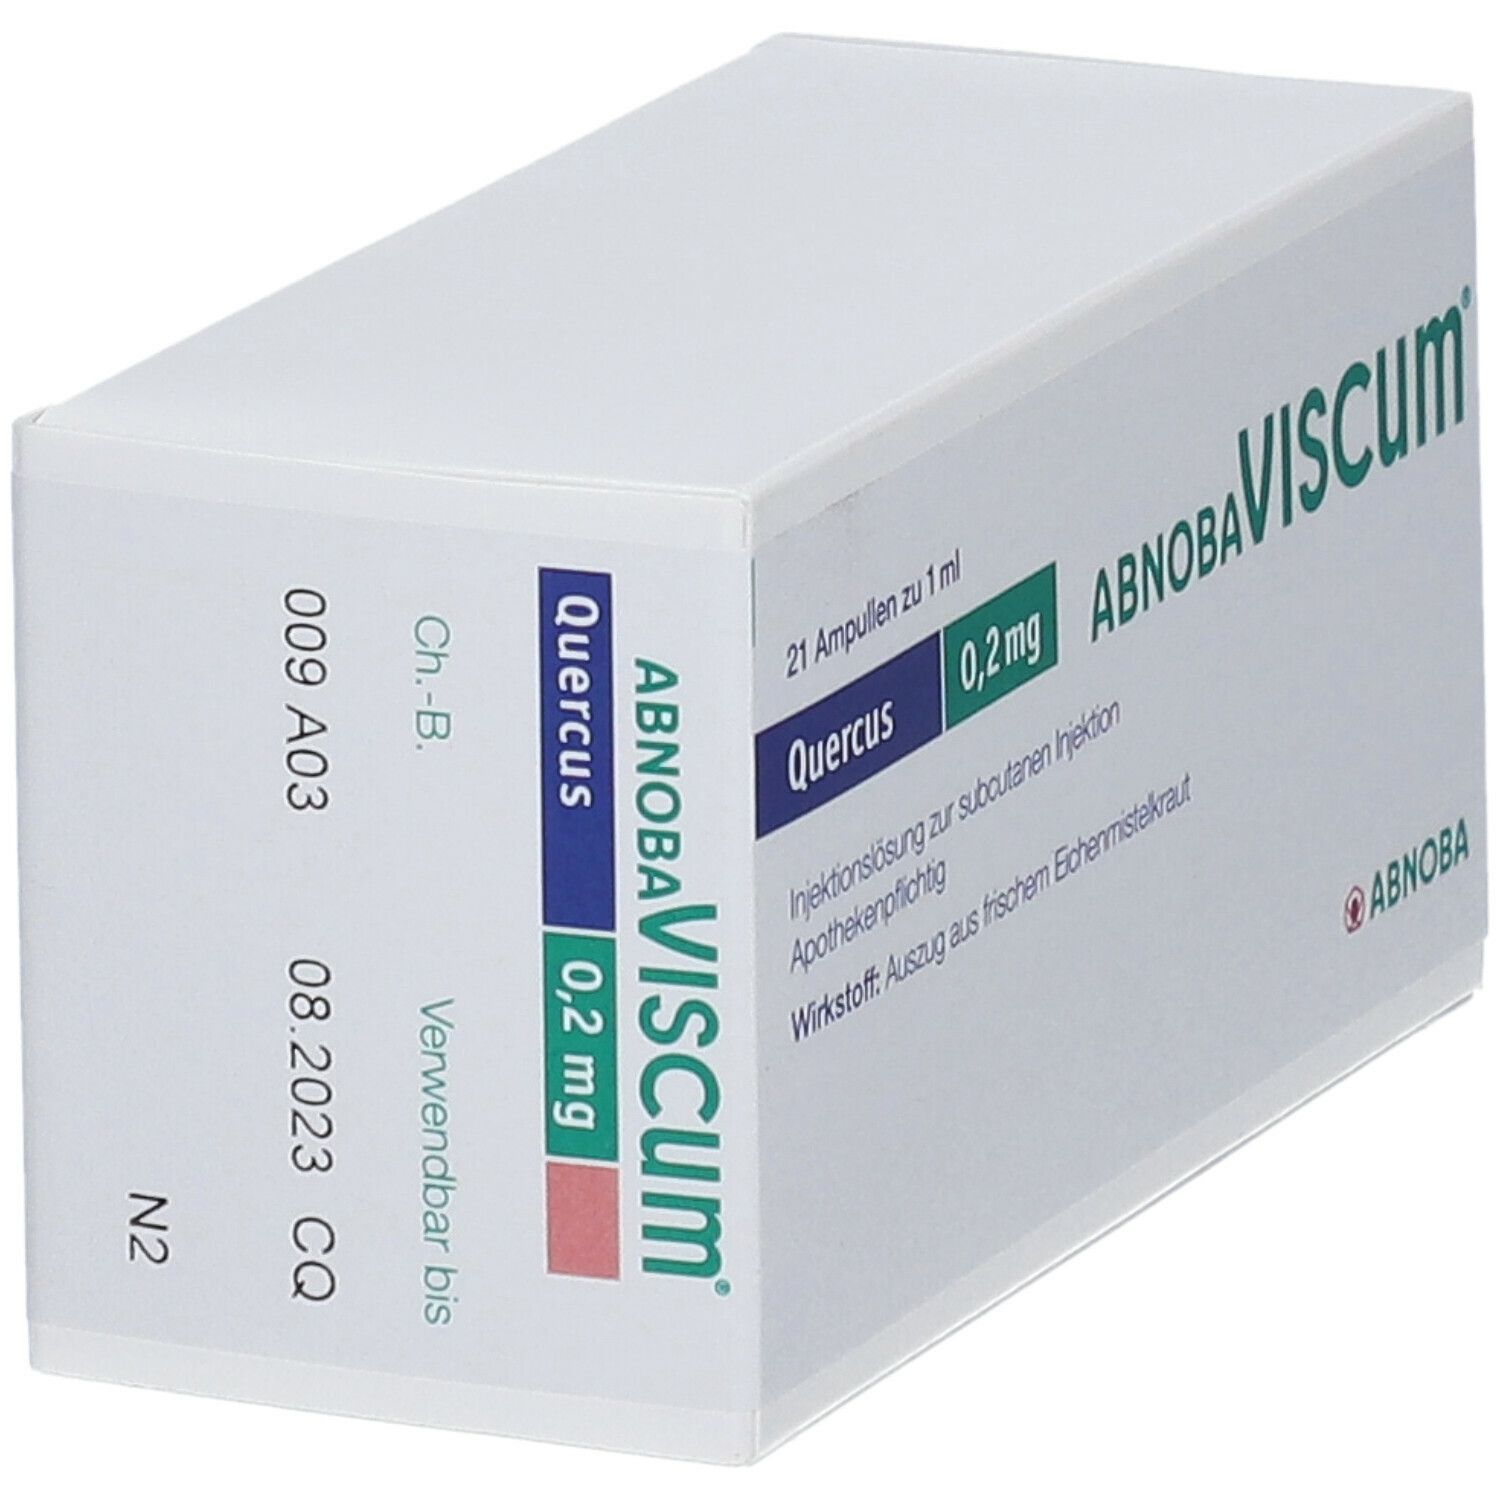 abnobaVISCUM® Quercus 0,2 mg Ampullen